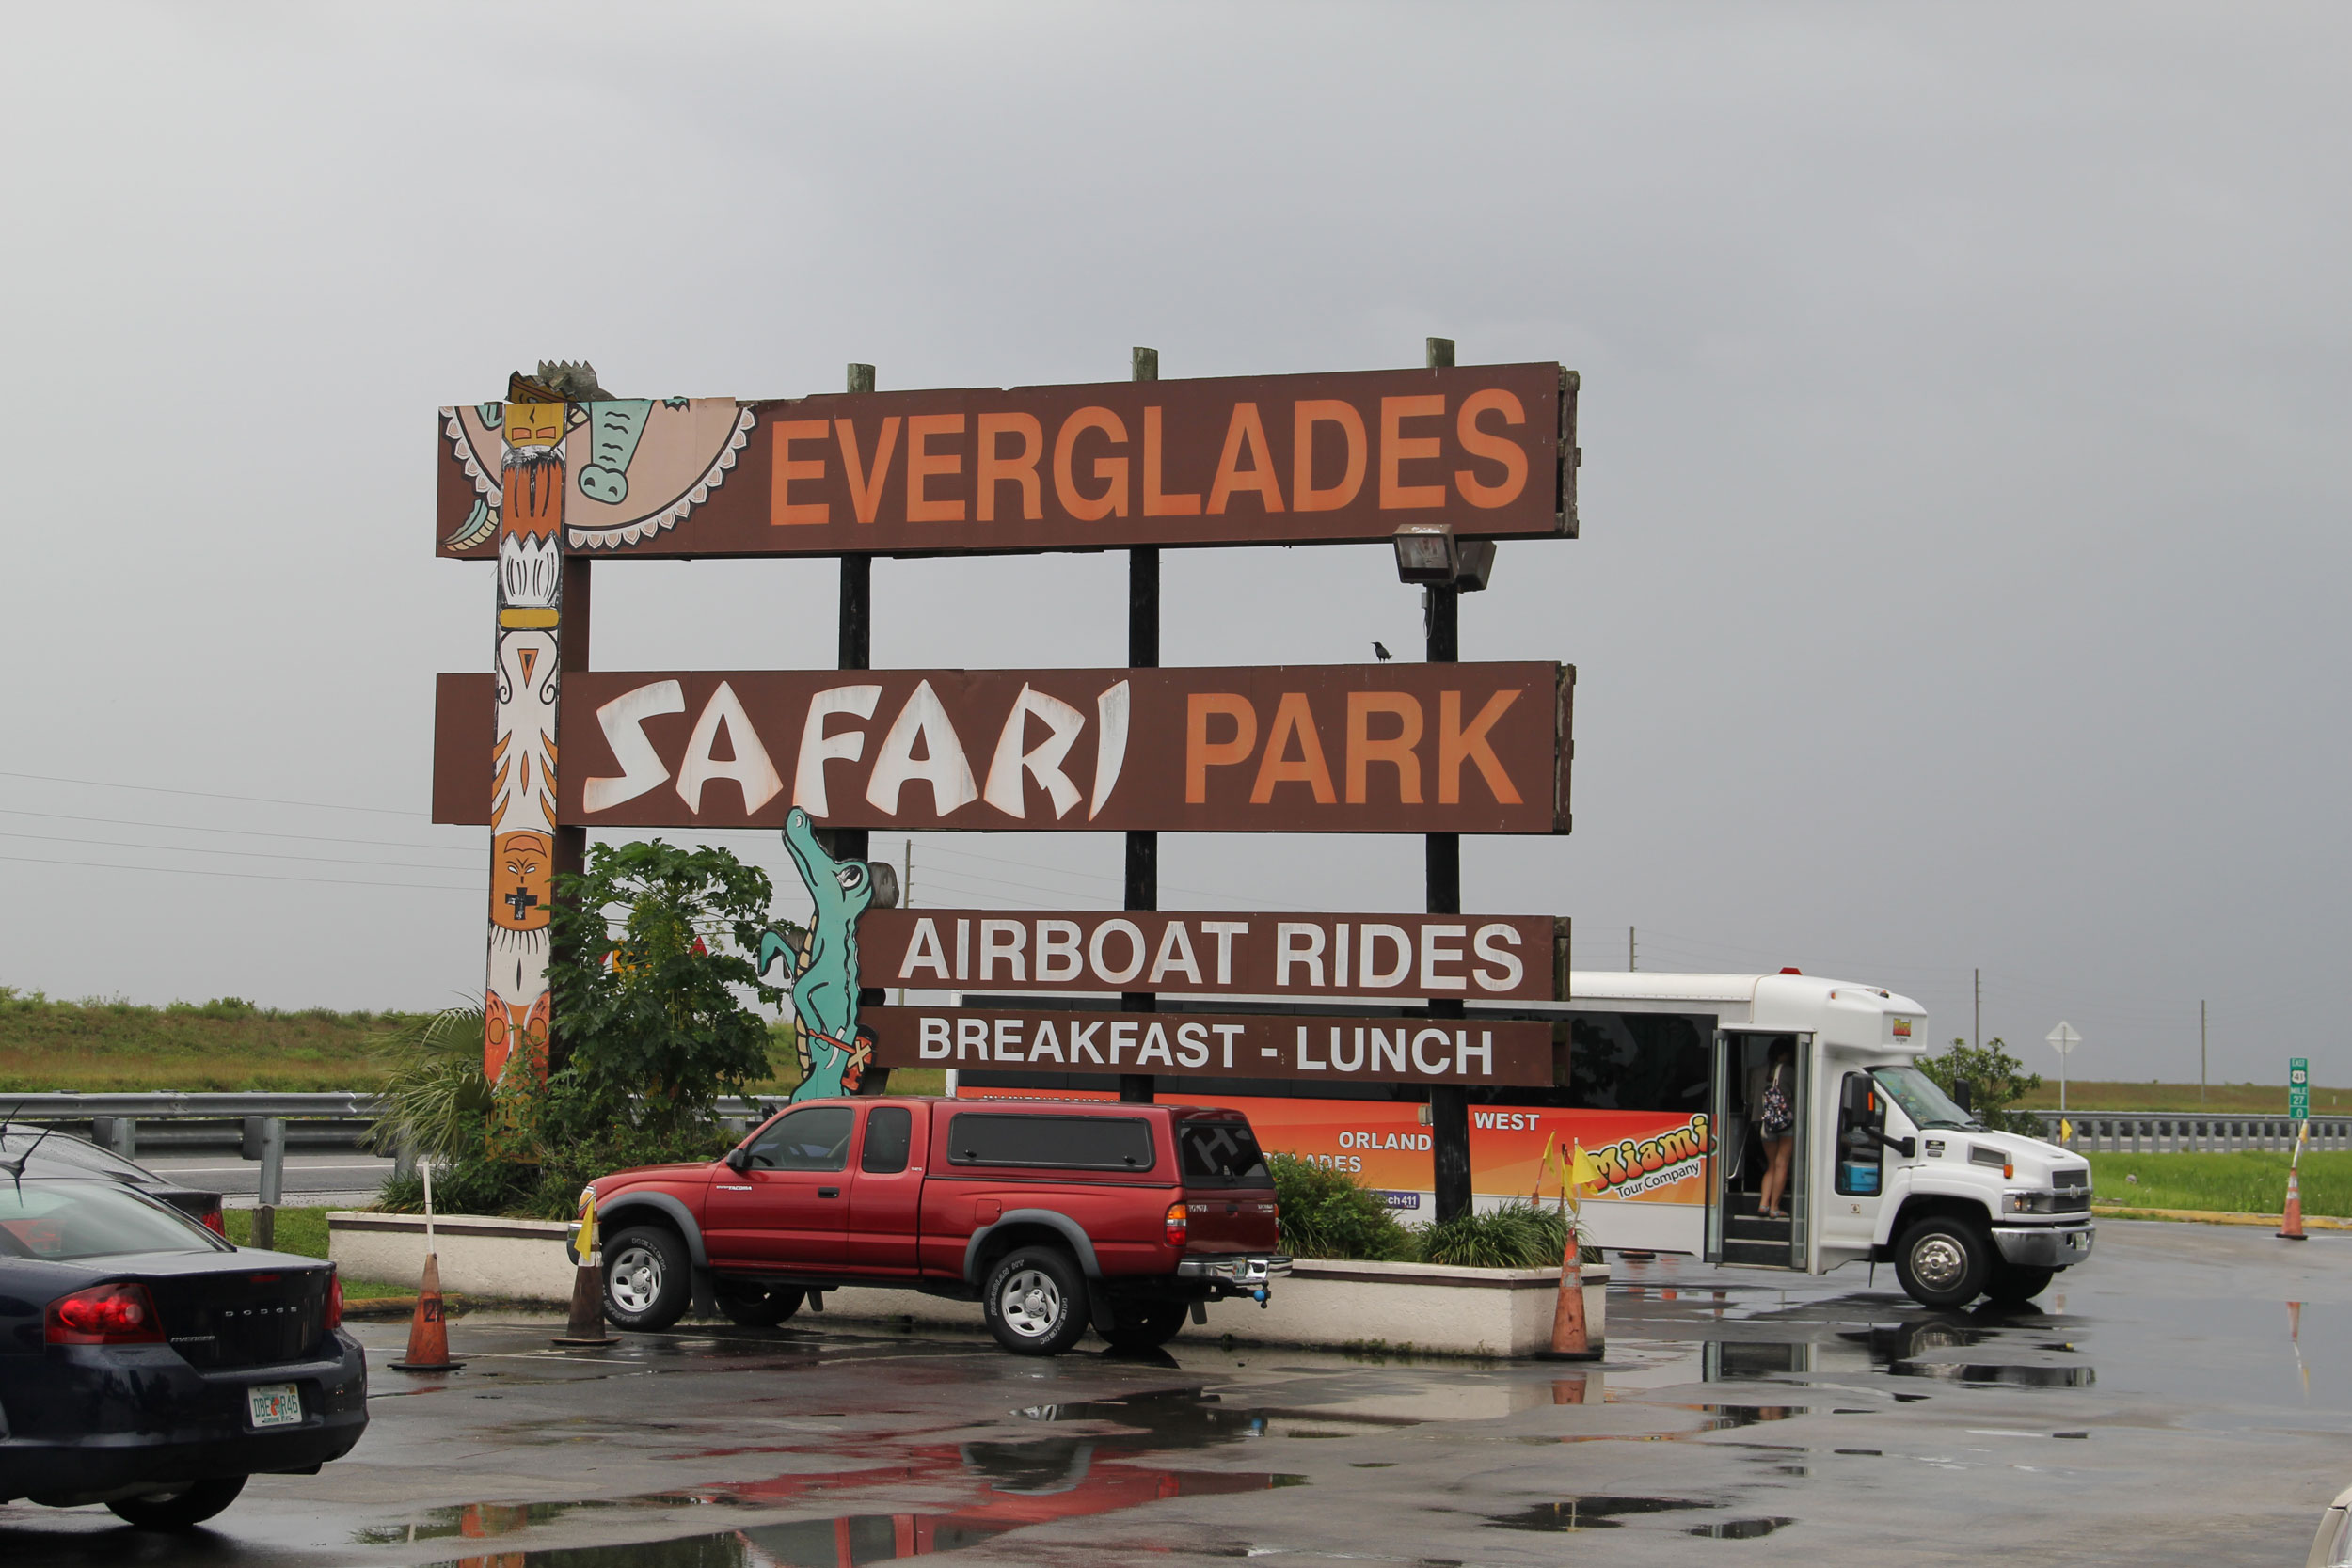 Everglades-Safari-Park